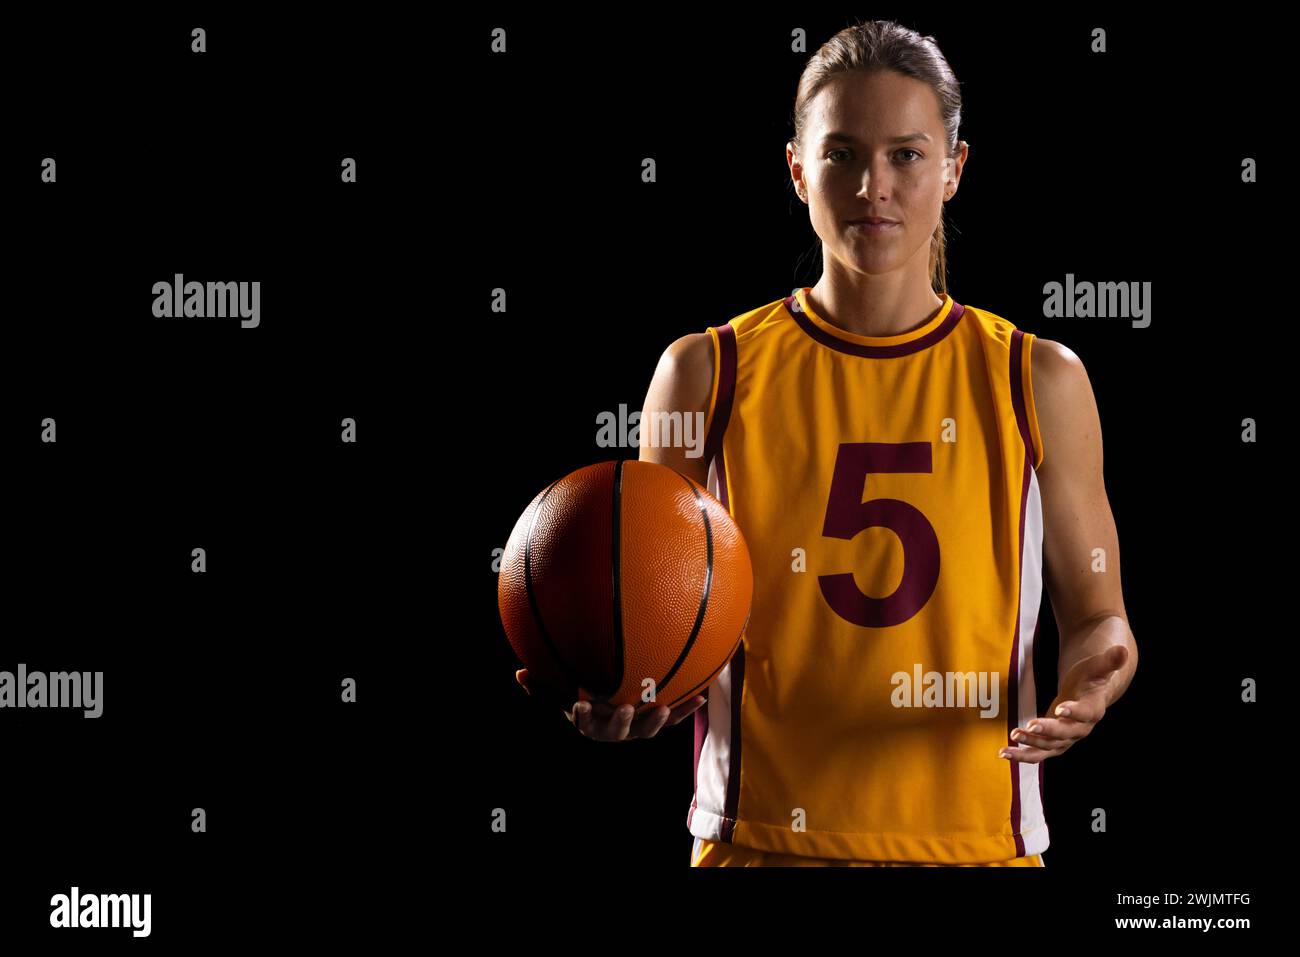 Sportliche Frau in Basketballausrüstung posiert mit Fokus und zeigt Engagement. Stockfoto